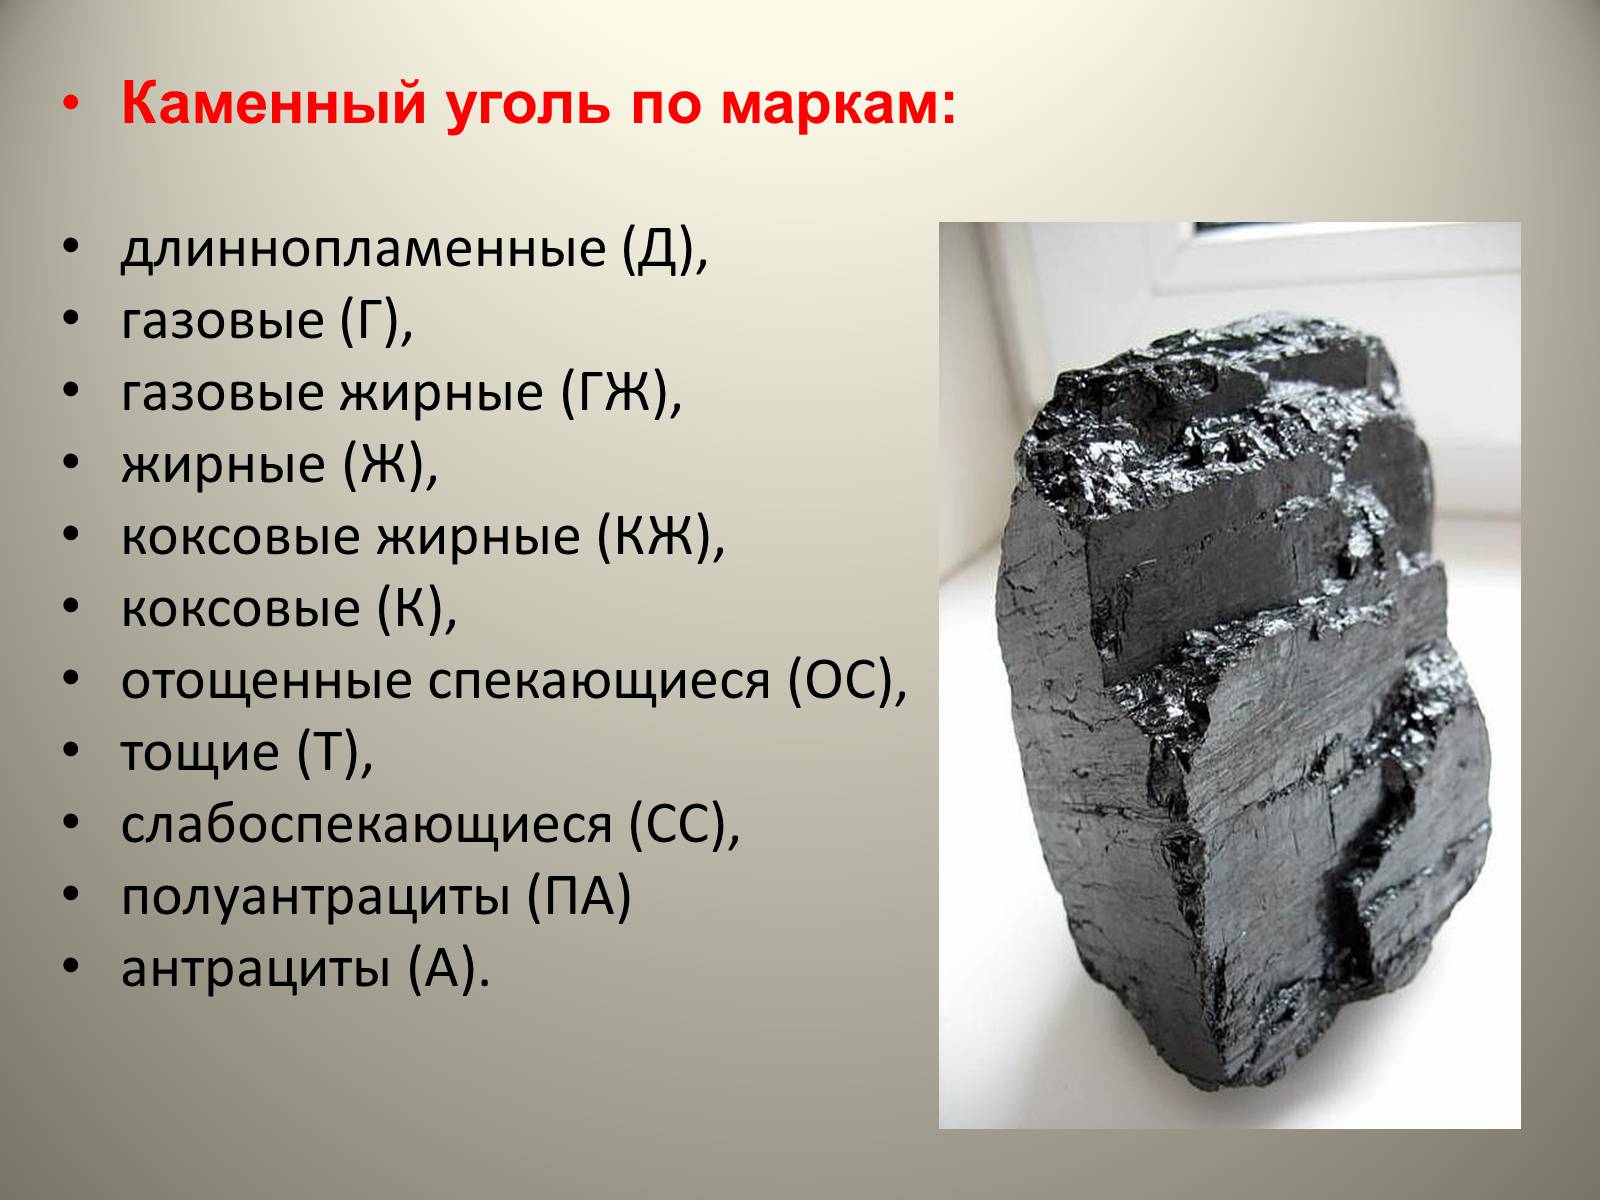 Каменный уголь реакции. Каменный уголь презентация. Уголь для презентации. Проект каменный уголь. Сведения о Каменном угле.